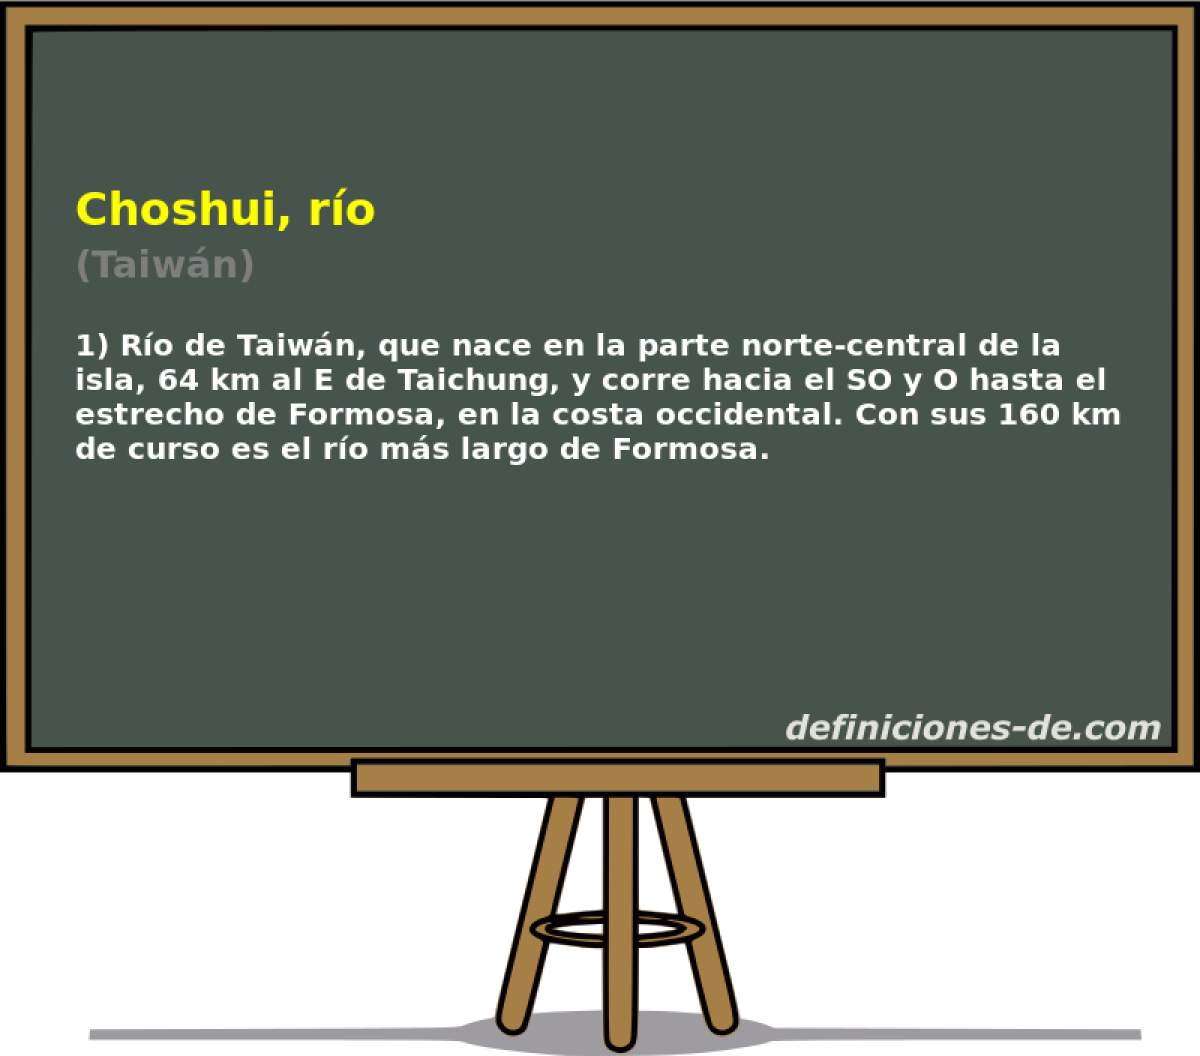 Choshui, ro (Taiwn)